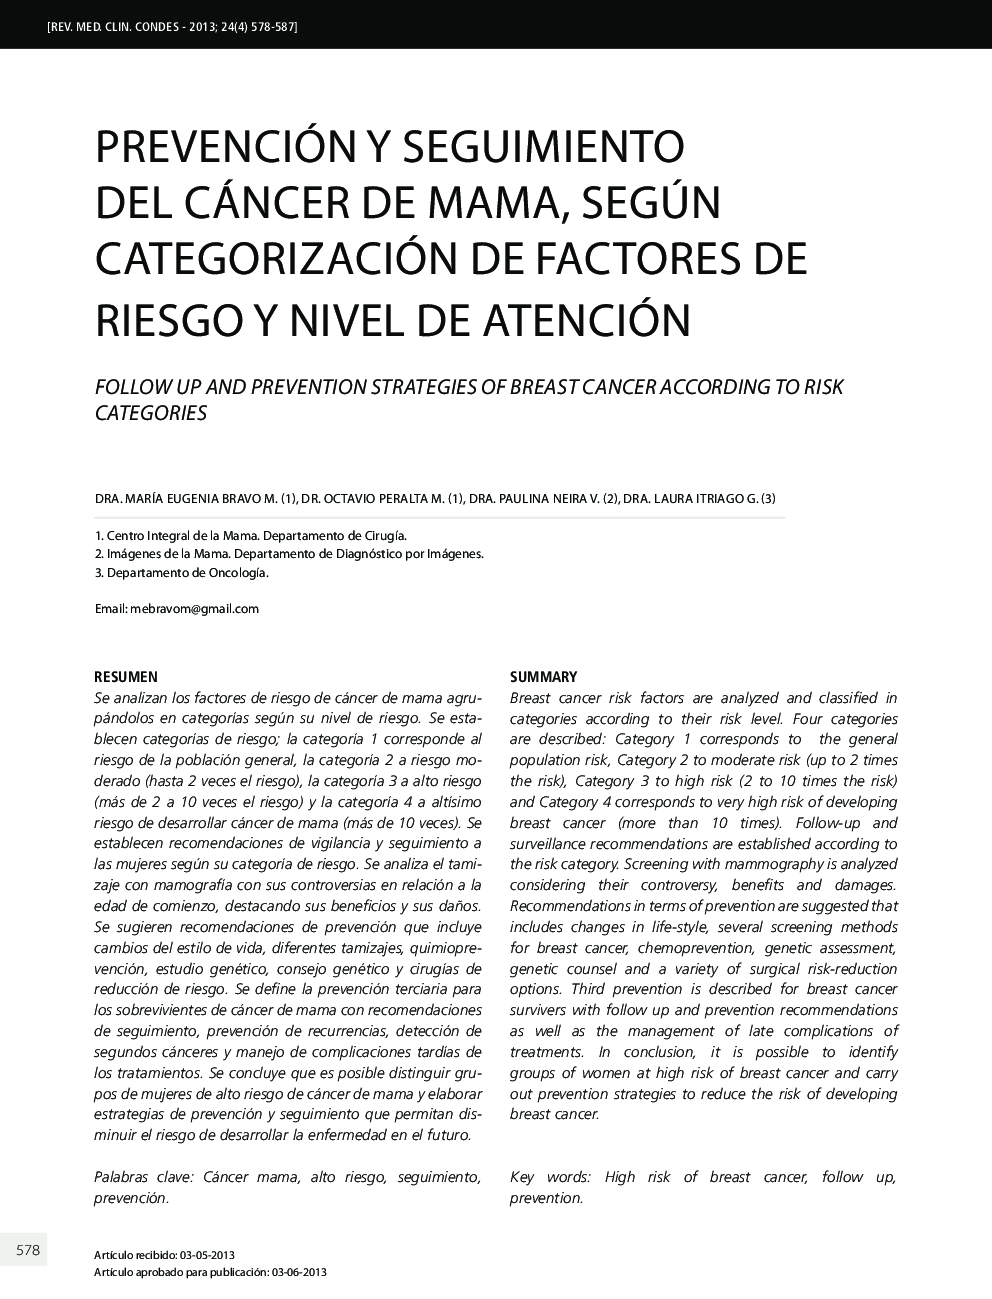 Prevención y seguimiento del cáncer de mama, según categorización de factores de riesgo y nivel de atención